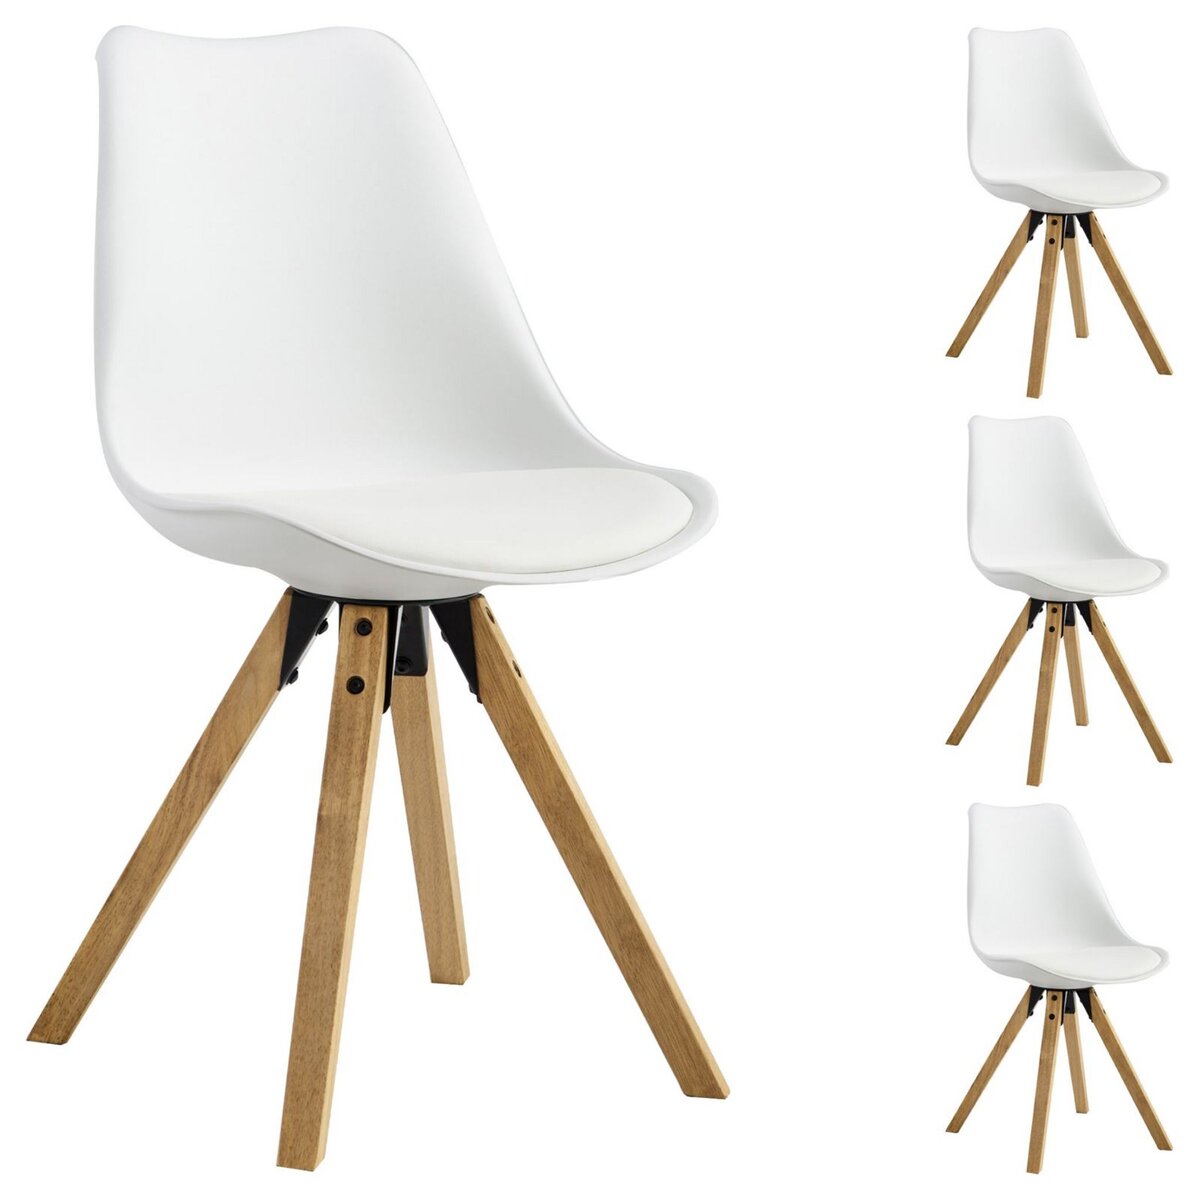 IDIMEX Lot de 4 chaises de salle à manger TYSON style scandinave design nordique piètement bois massif, siège coque en plastique blanc